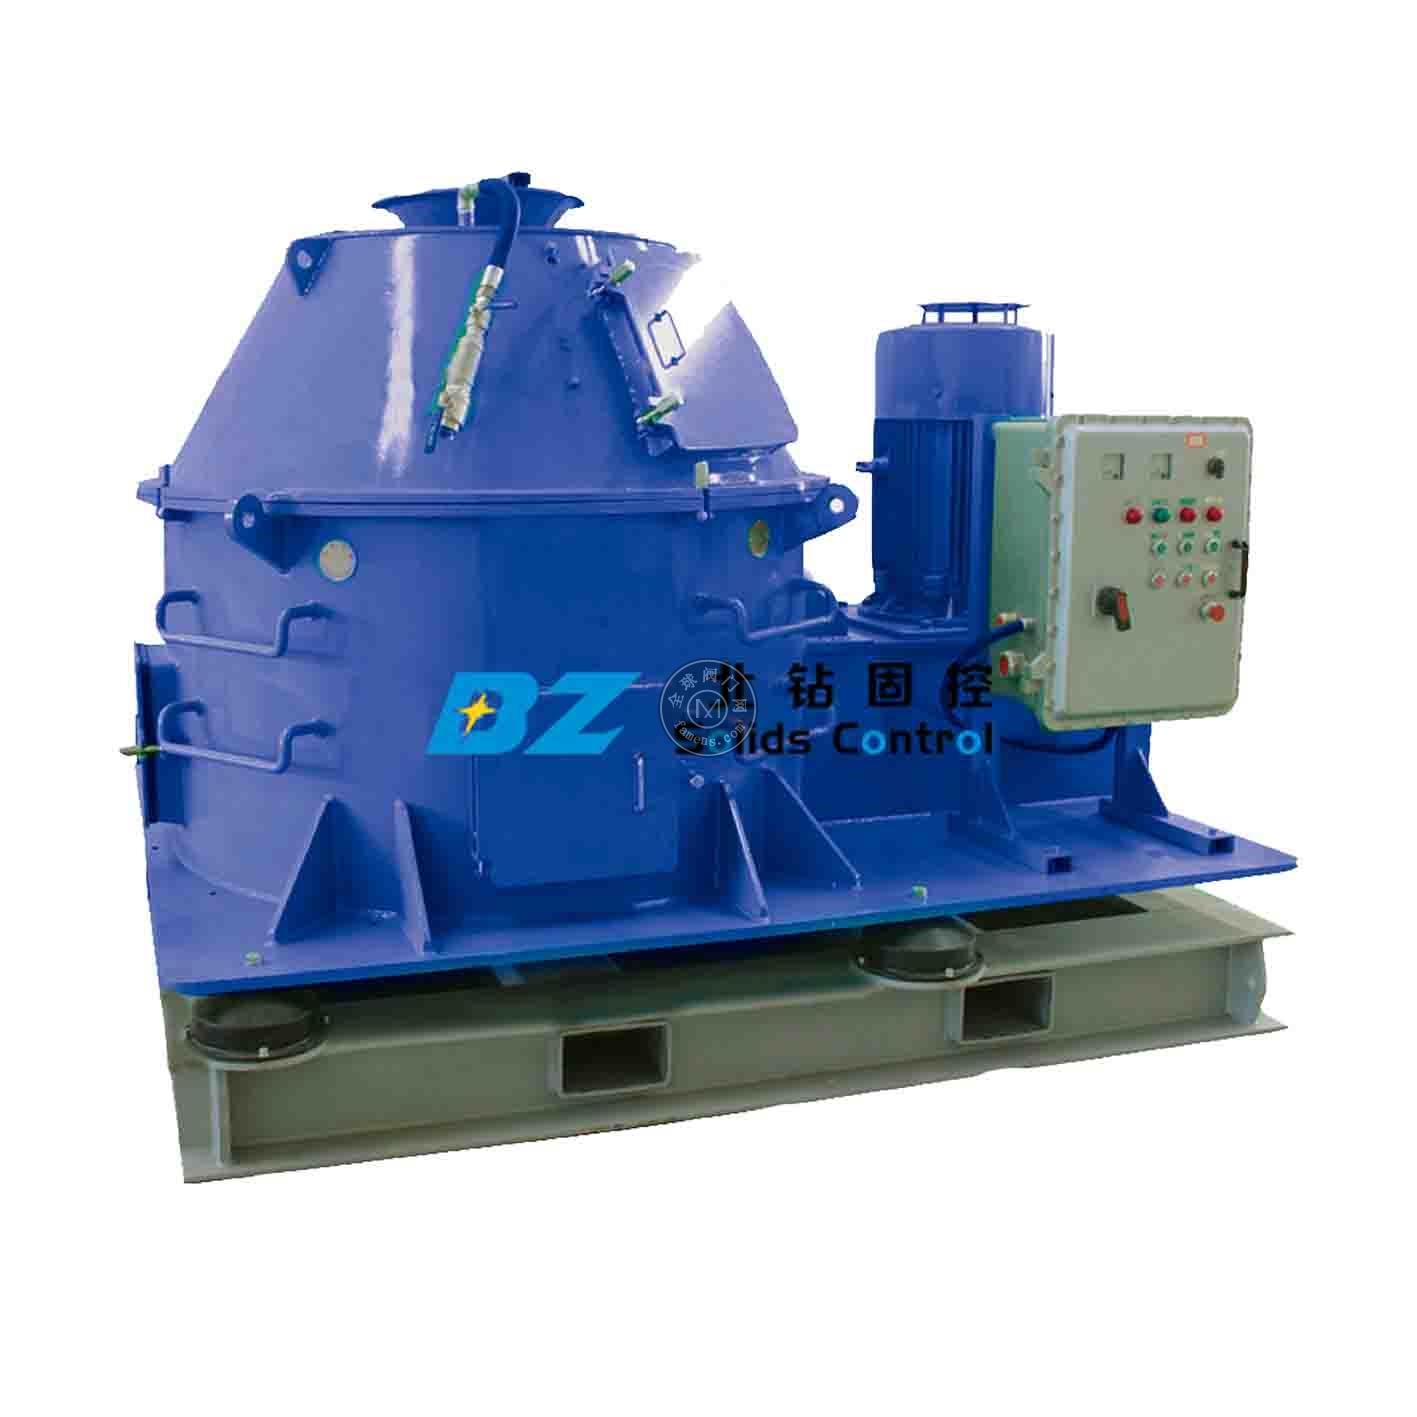 北钻固控设备固控系统石油钻采设备钻屑干燥机